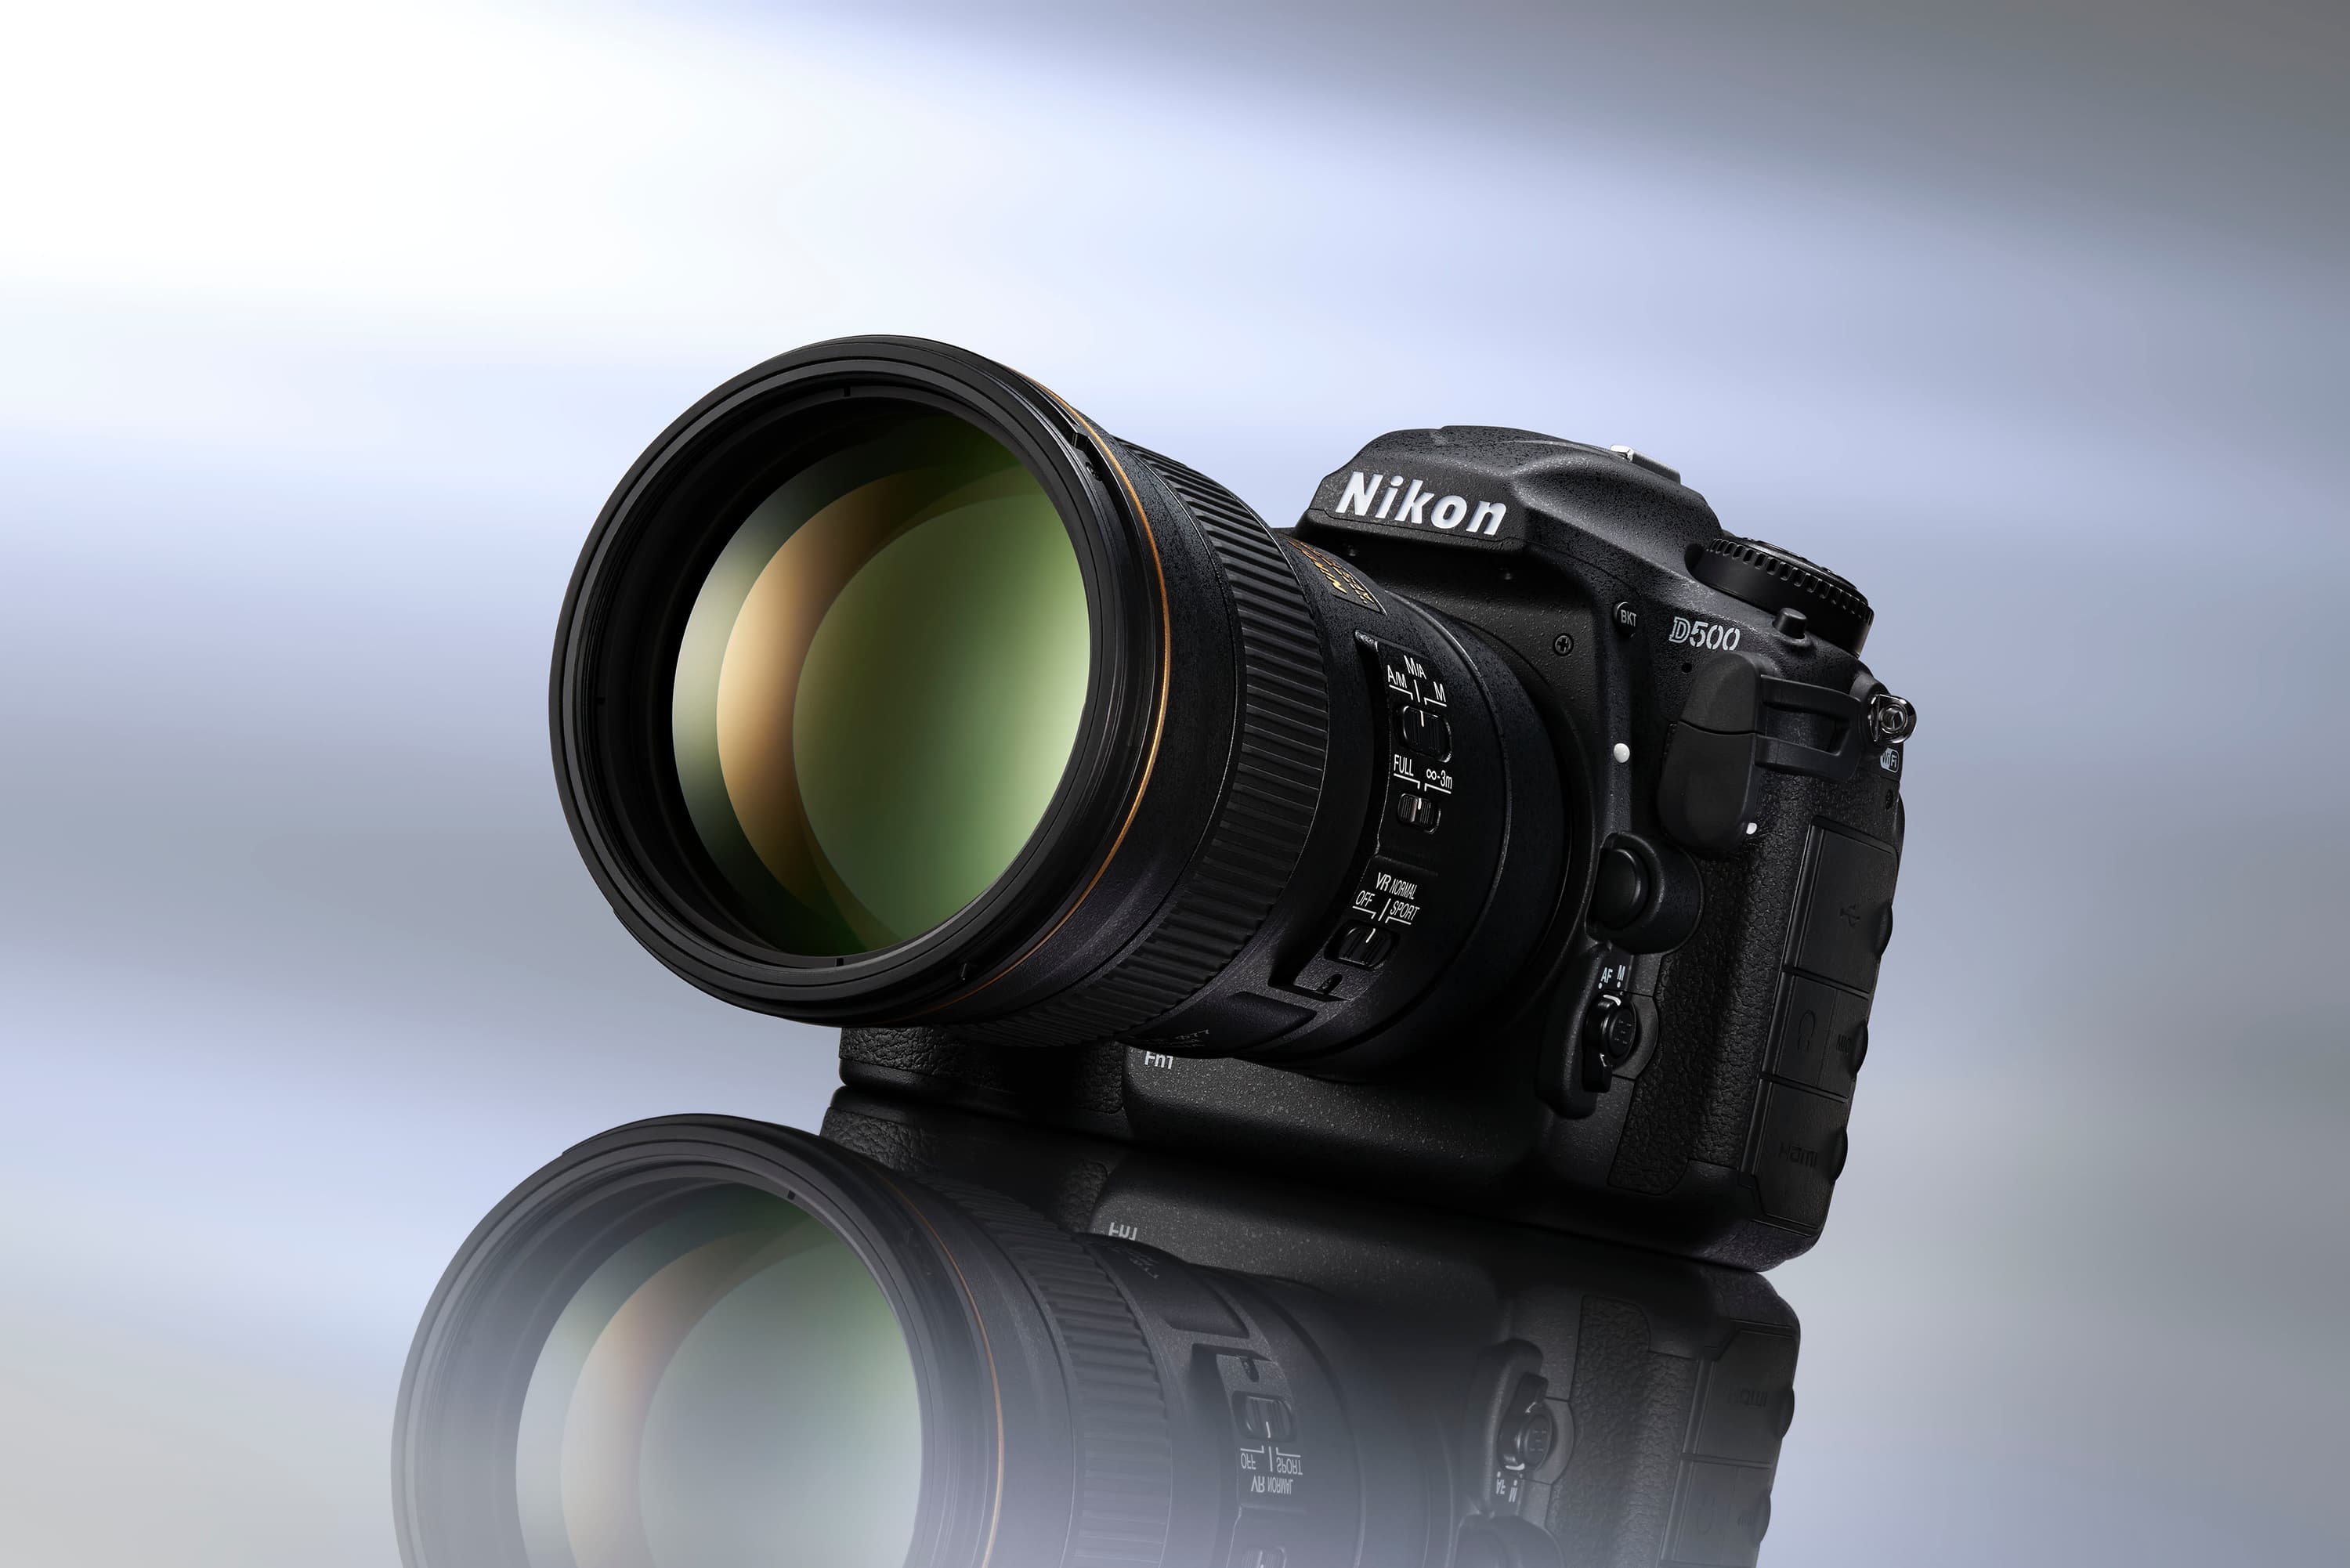 Nikon D500 review: Is it still a capable APS-C DSLR? - Amateur